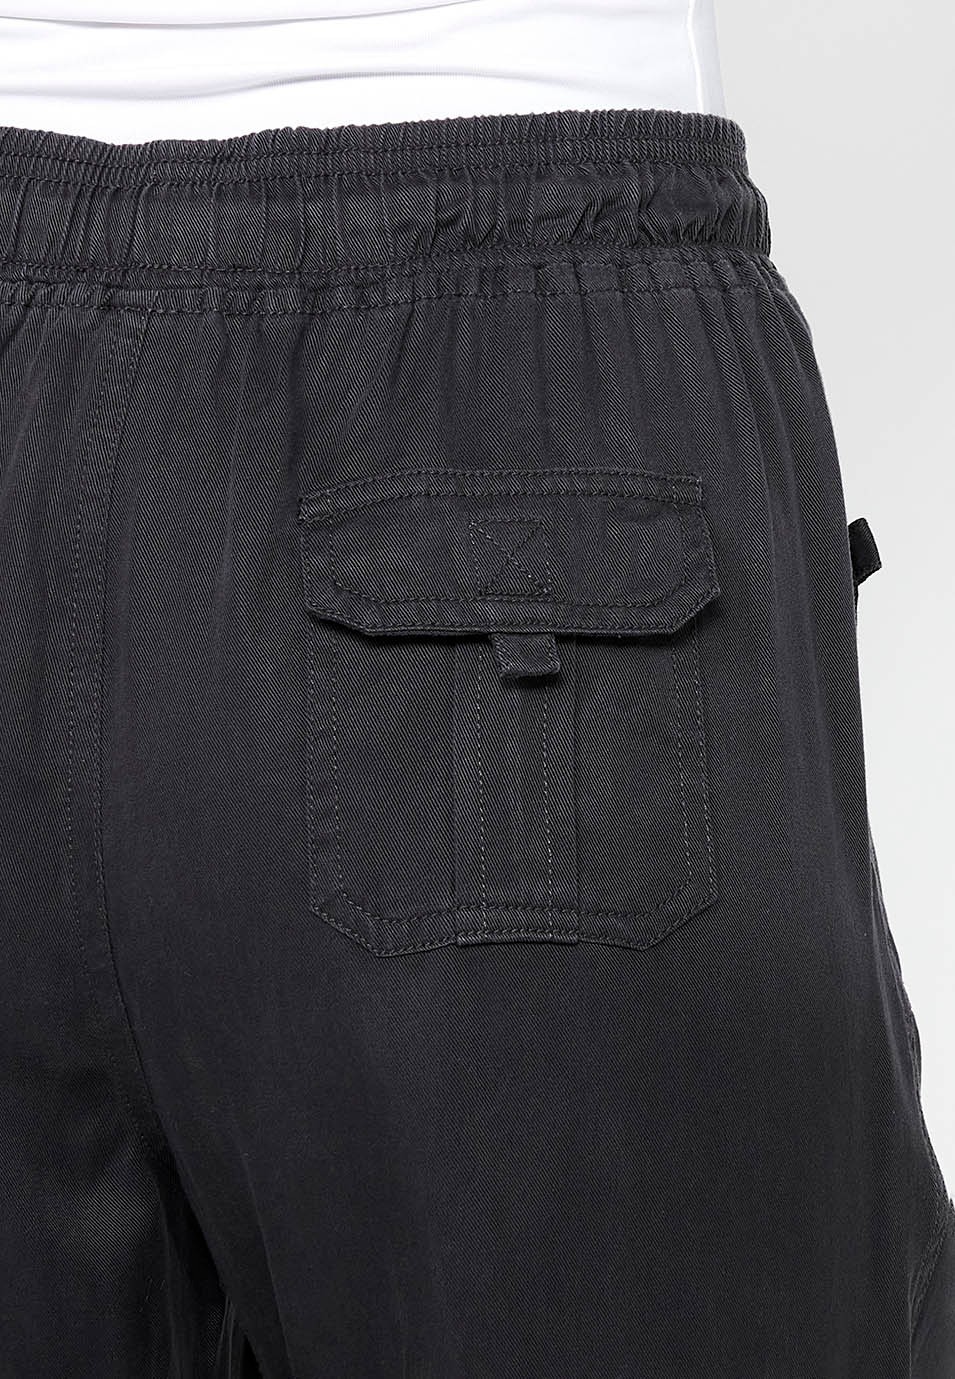 Pantalon de jogging long finition bouclée et taille caoutchoutée avec quatre poches dont deux à l'arrière avec rabat en Noir pour Femme 10